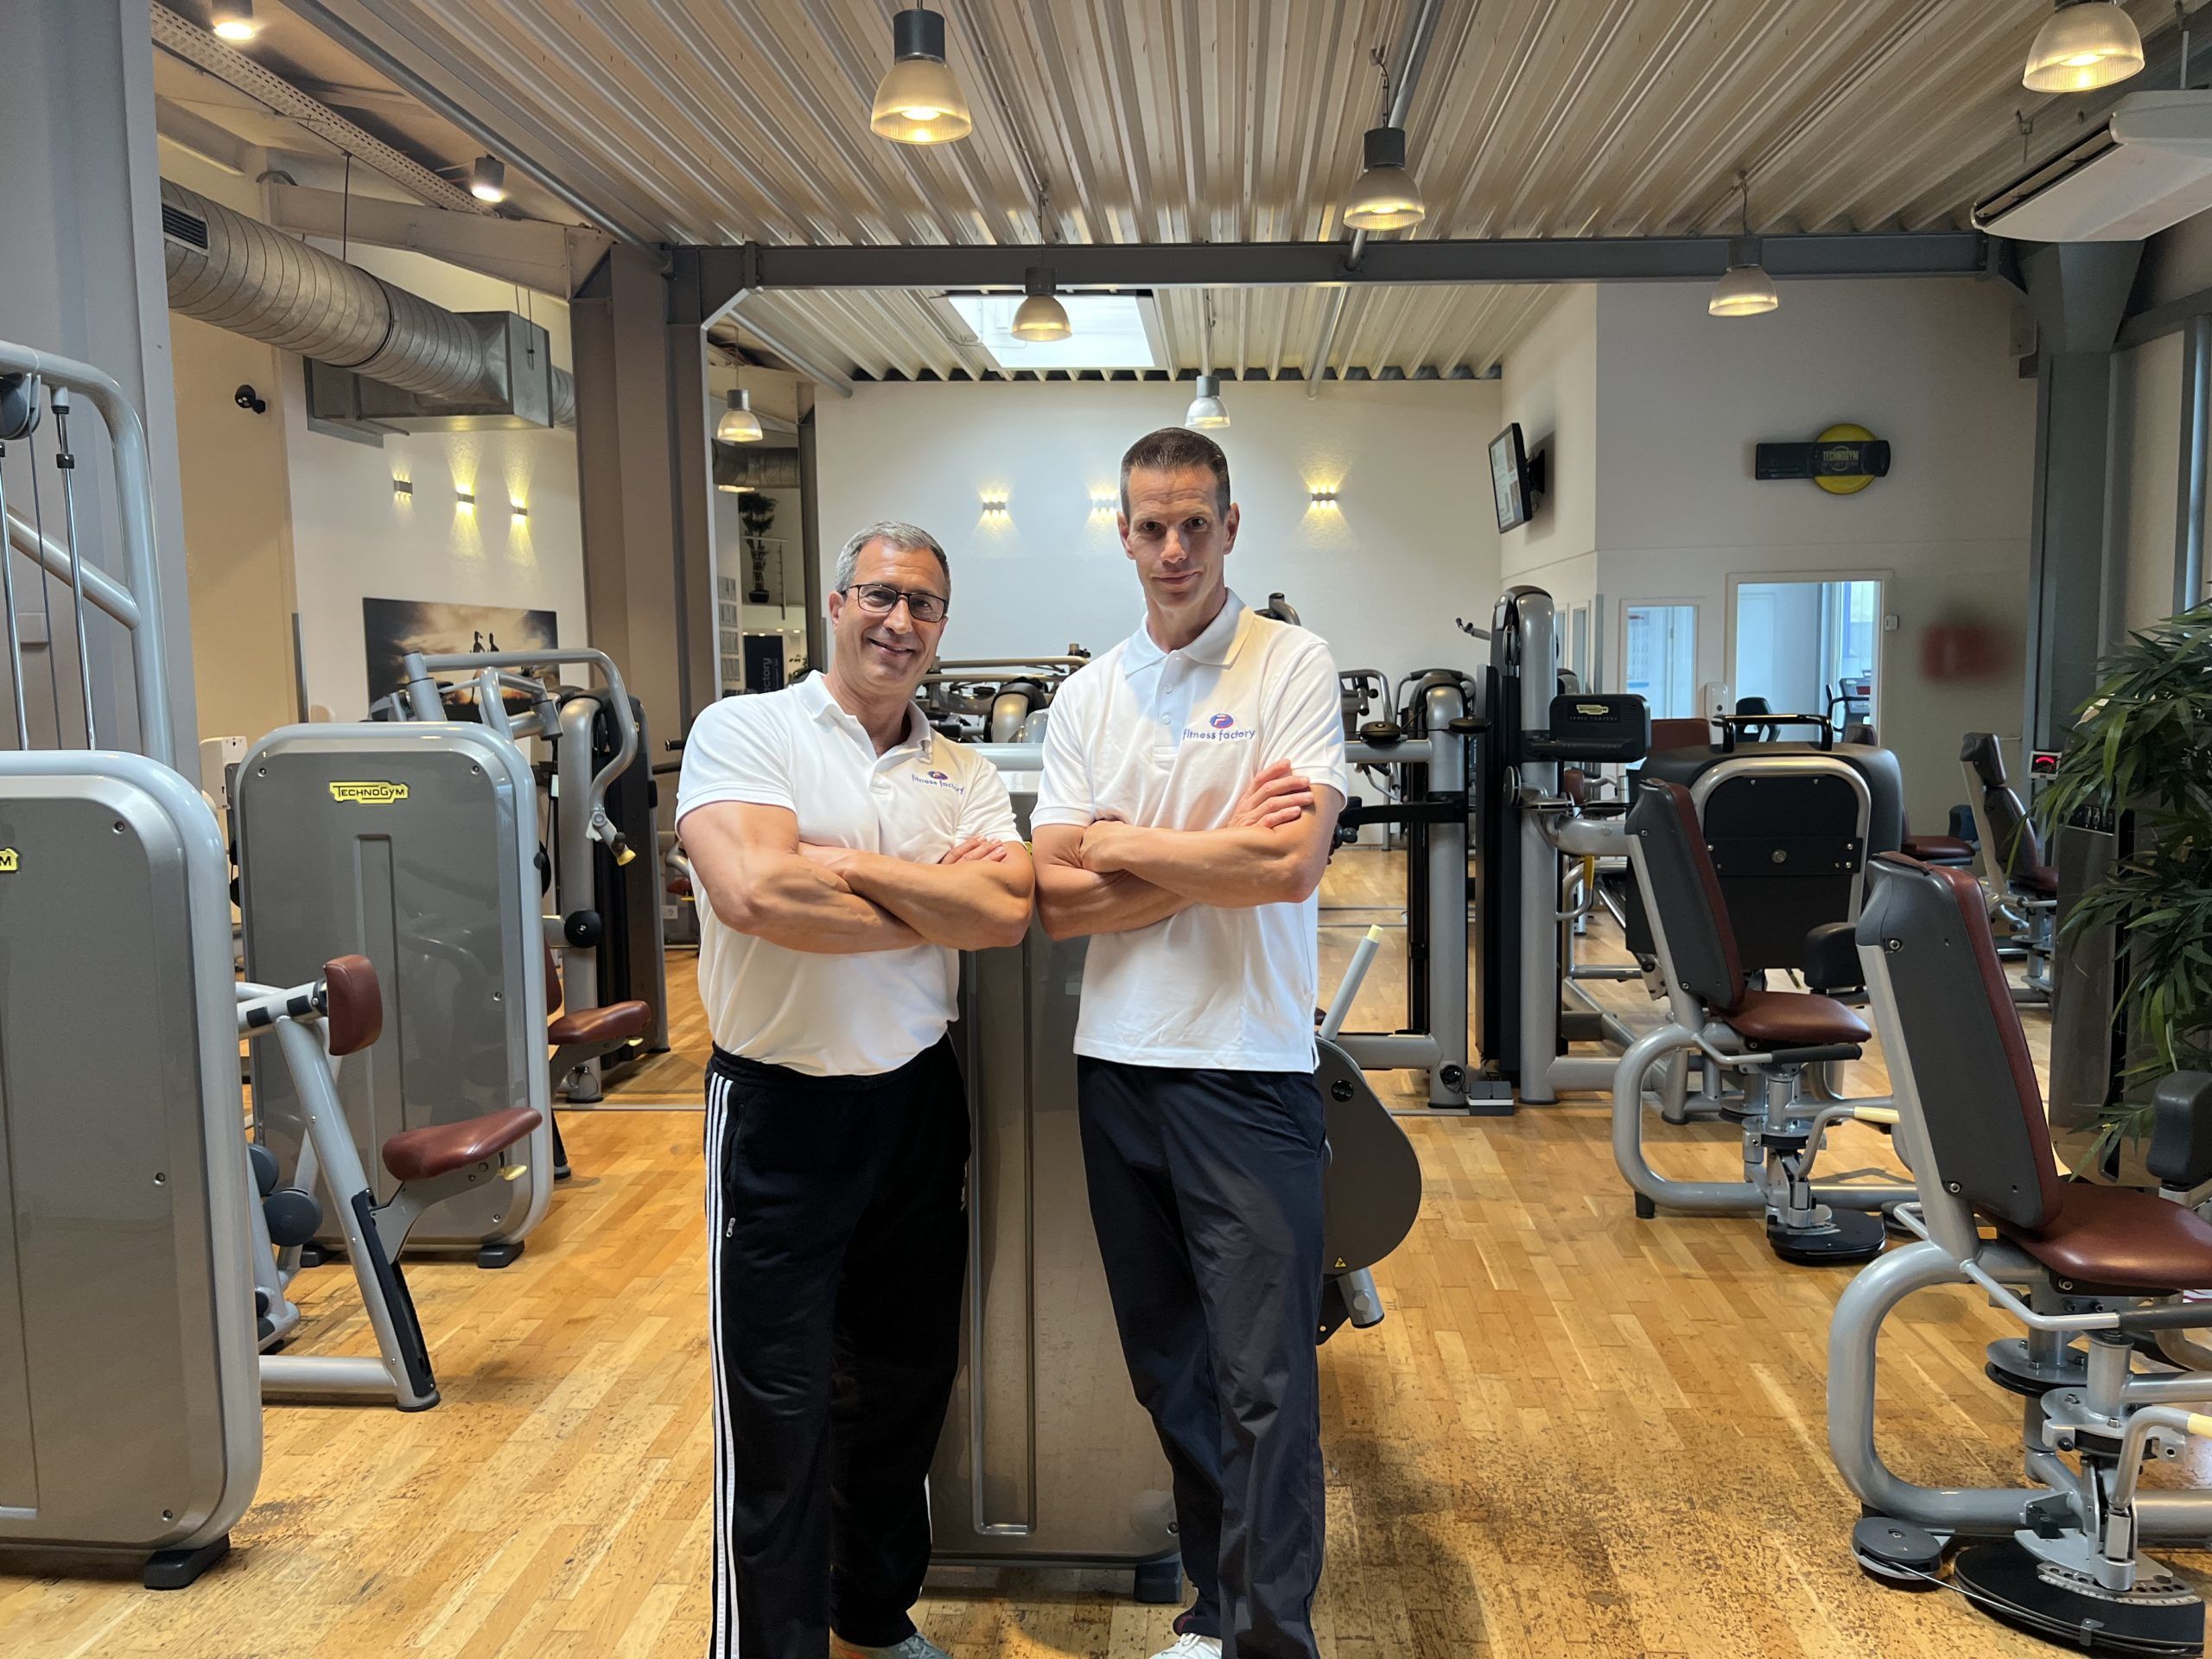 Jens Ellermann und Steffen Levin, Gründer und Inhaber, haben in das Biocircuit Trainingskonzept von Technogym investiert und sind stolz auf ihre Fitness Factory Lüdenscheid.